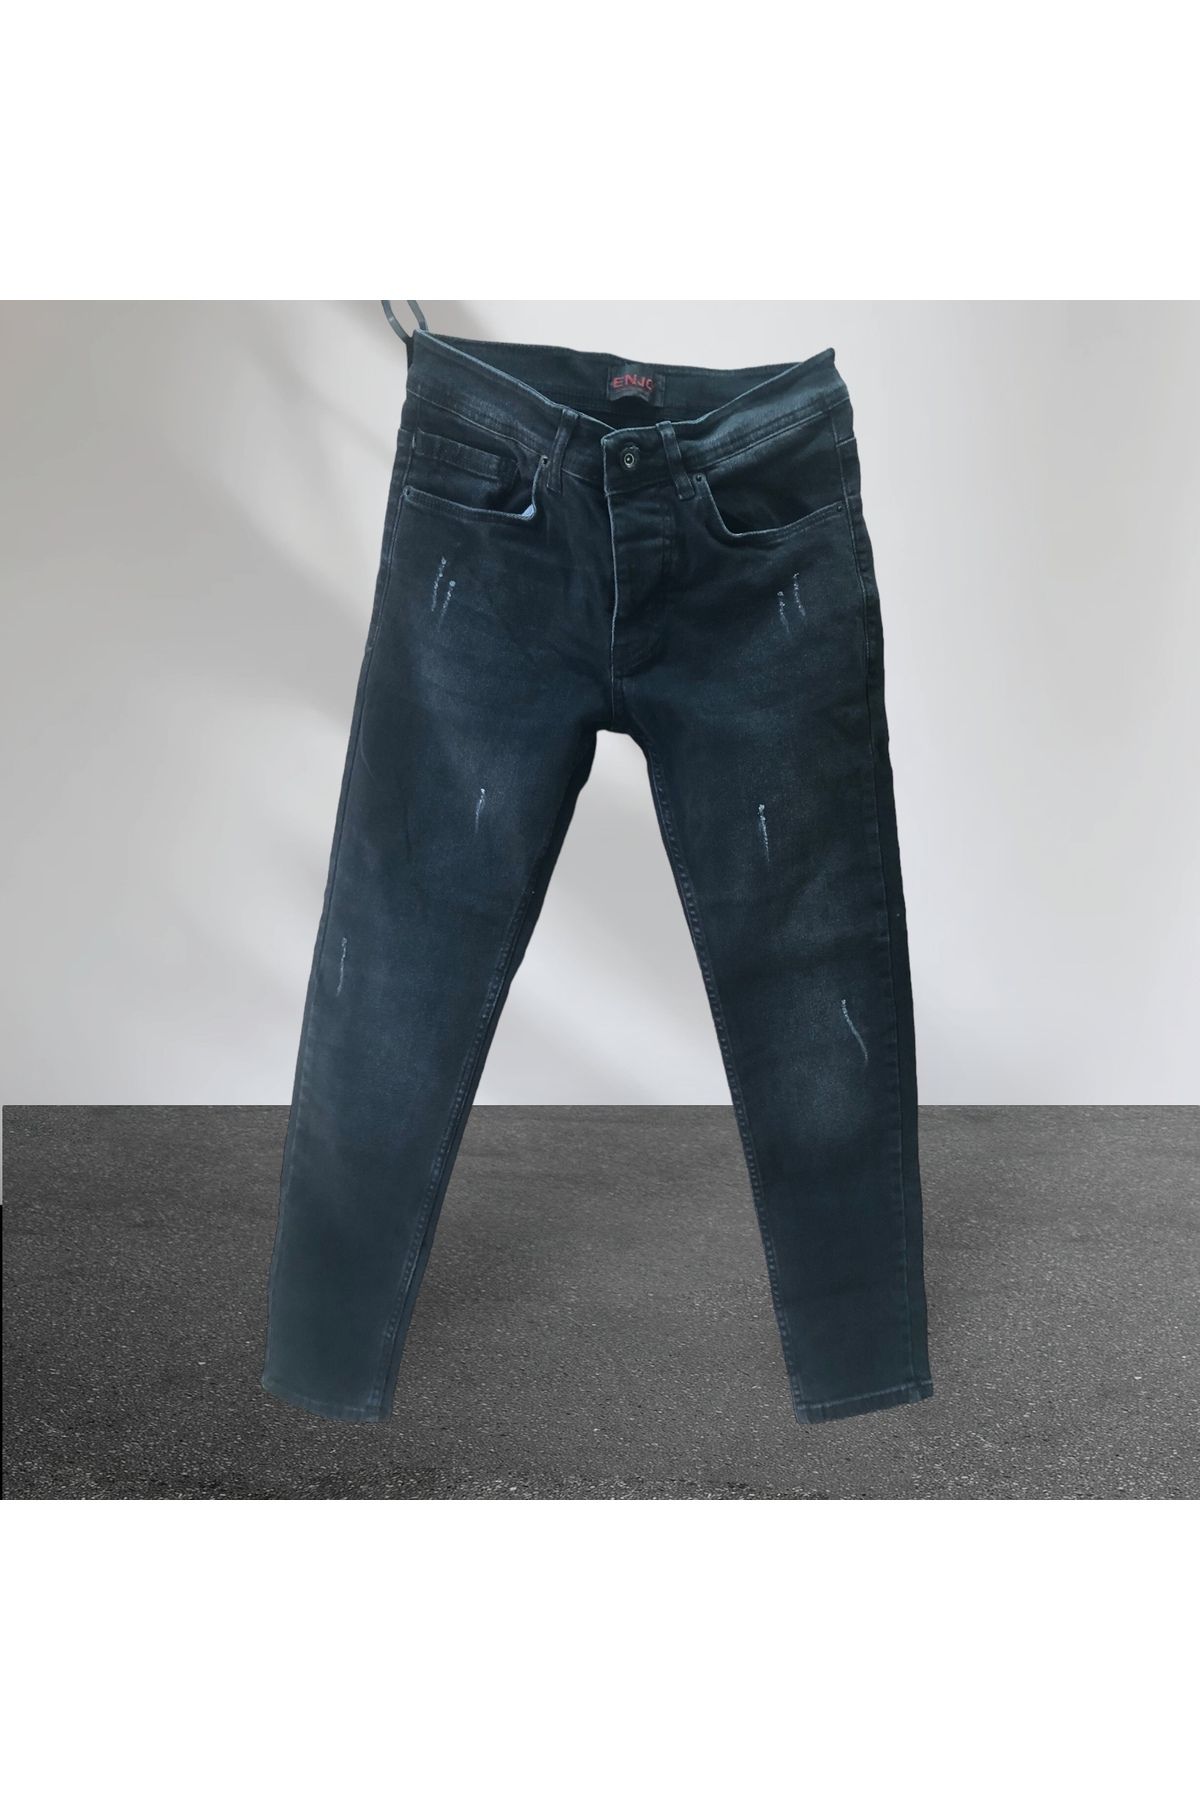 Enjoy Kot-Jeans-Tırnaklı yıpratmalı-Slim Fit-Ligralı